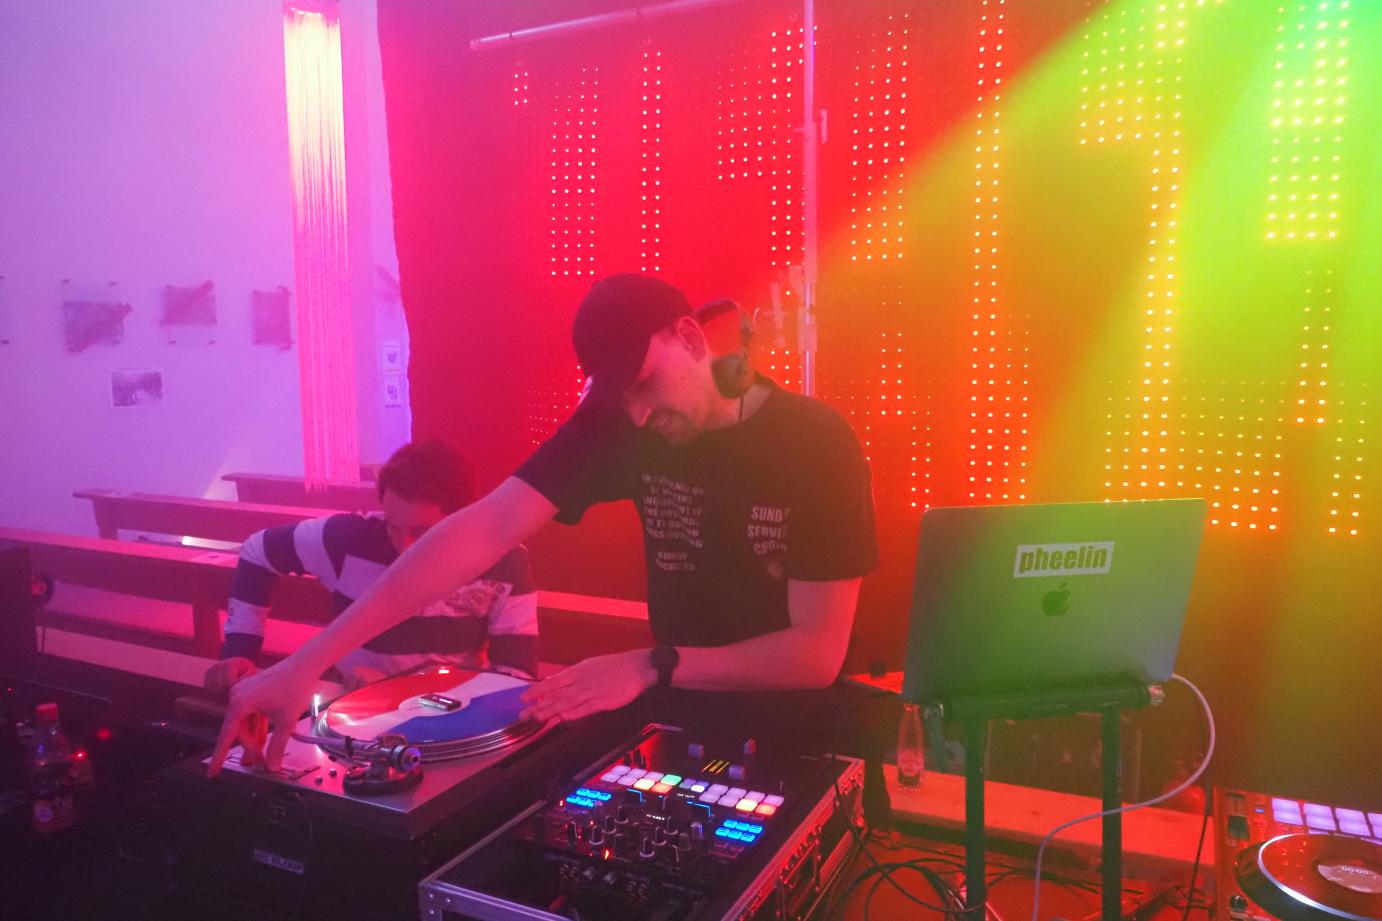 DJ pheelin sorgt mit Electronic Dance Music, Lightshow und Nebel für Disko-Feeling.